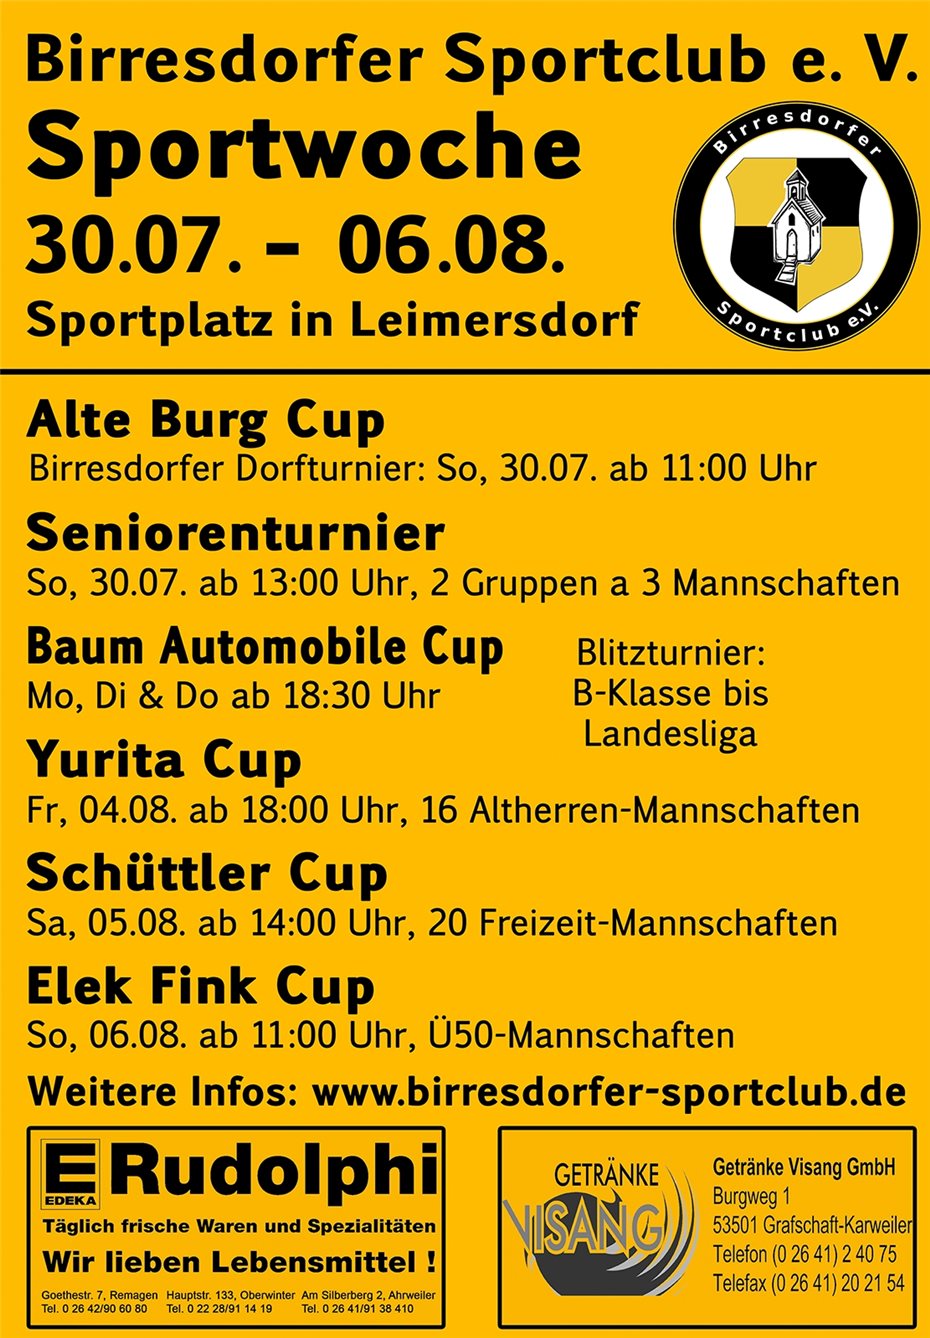 Alte-Burg-Cup macht den Auftakt